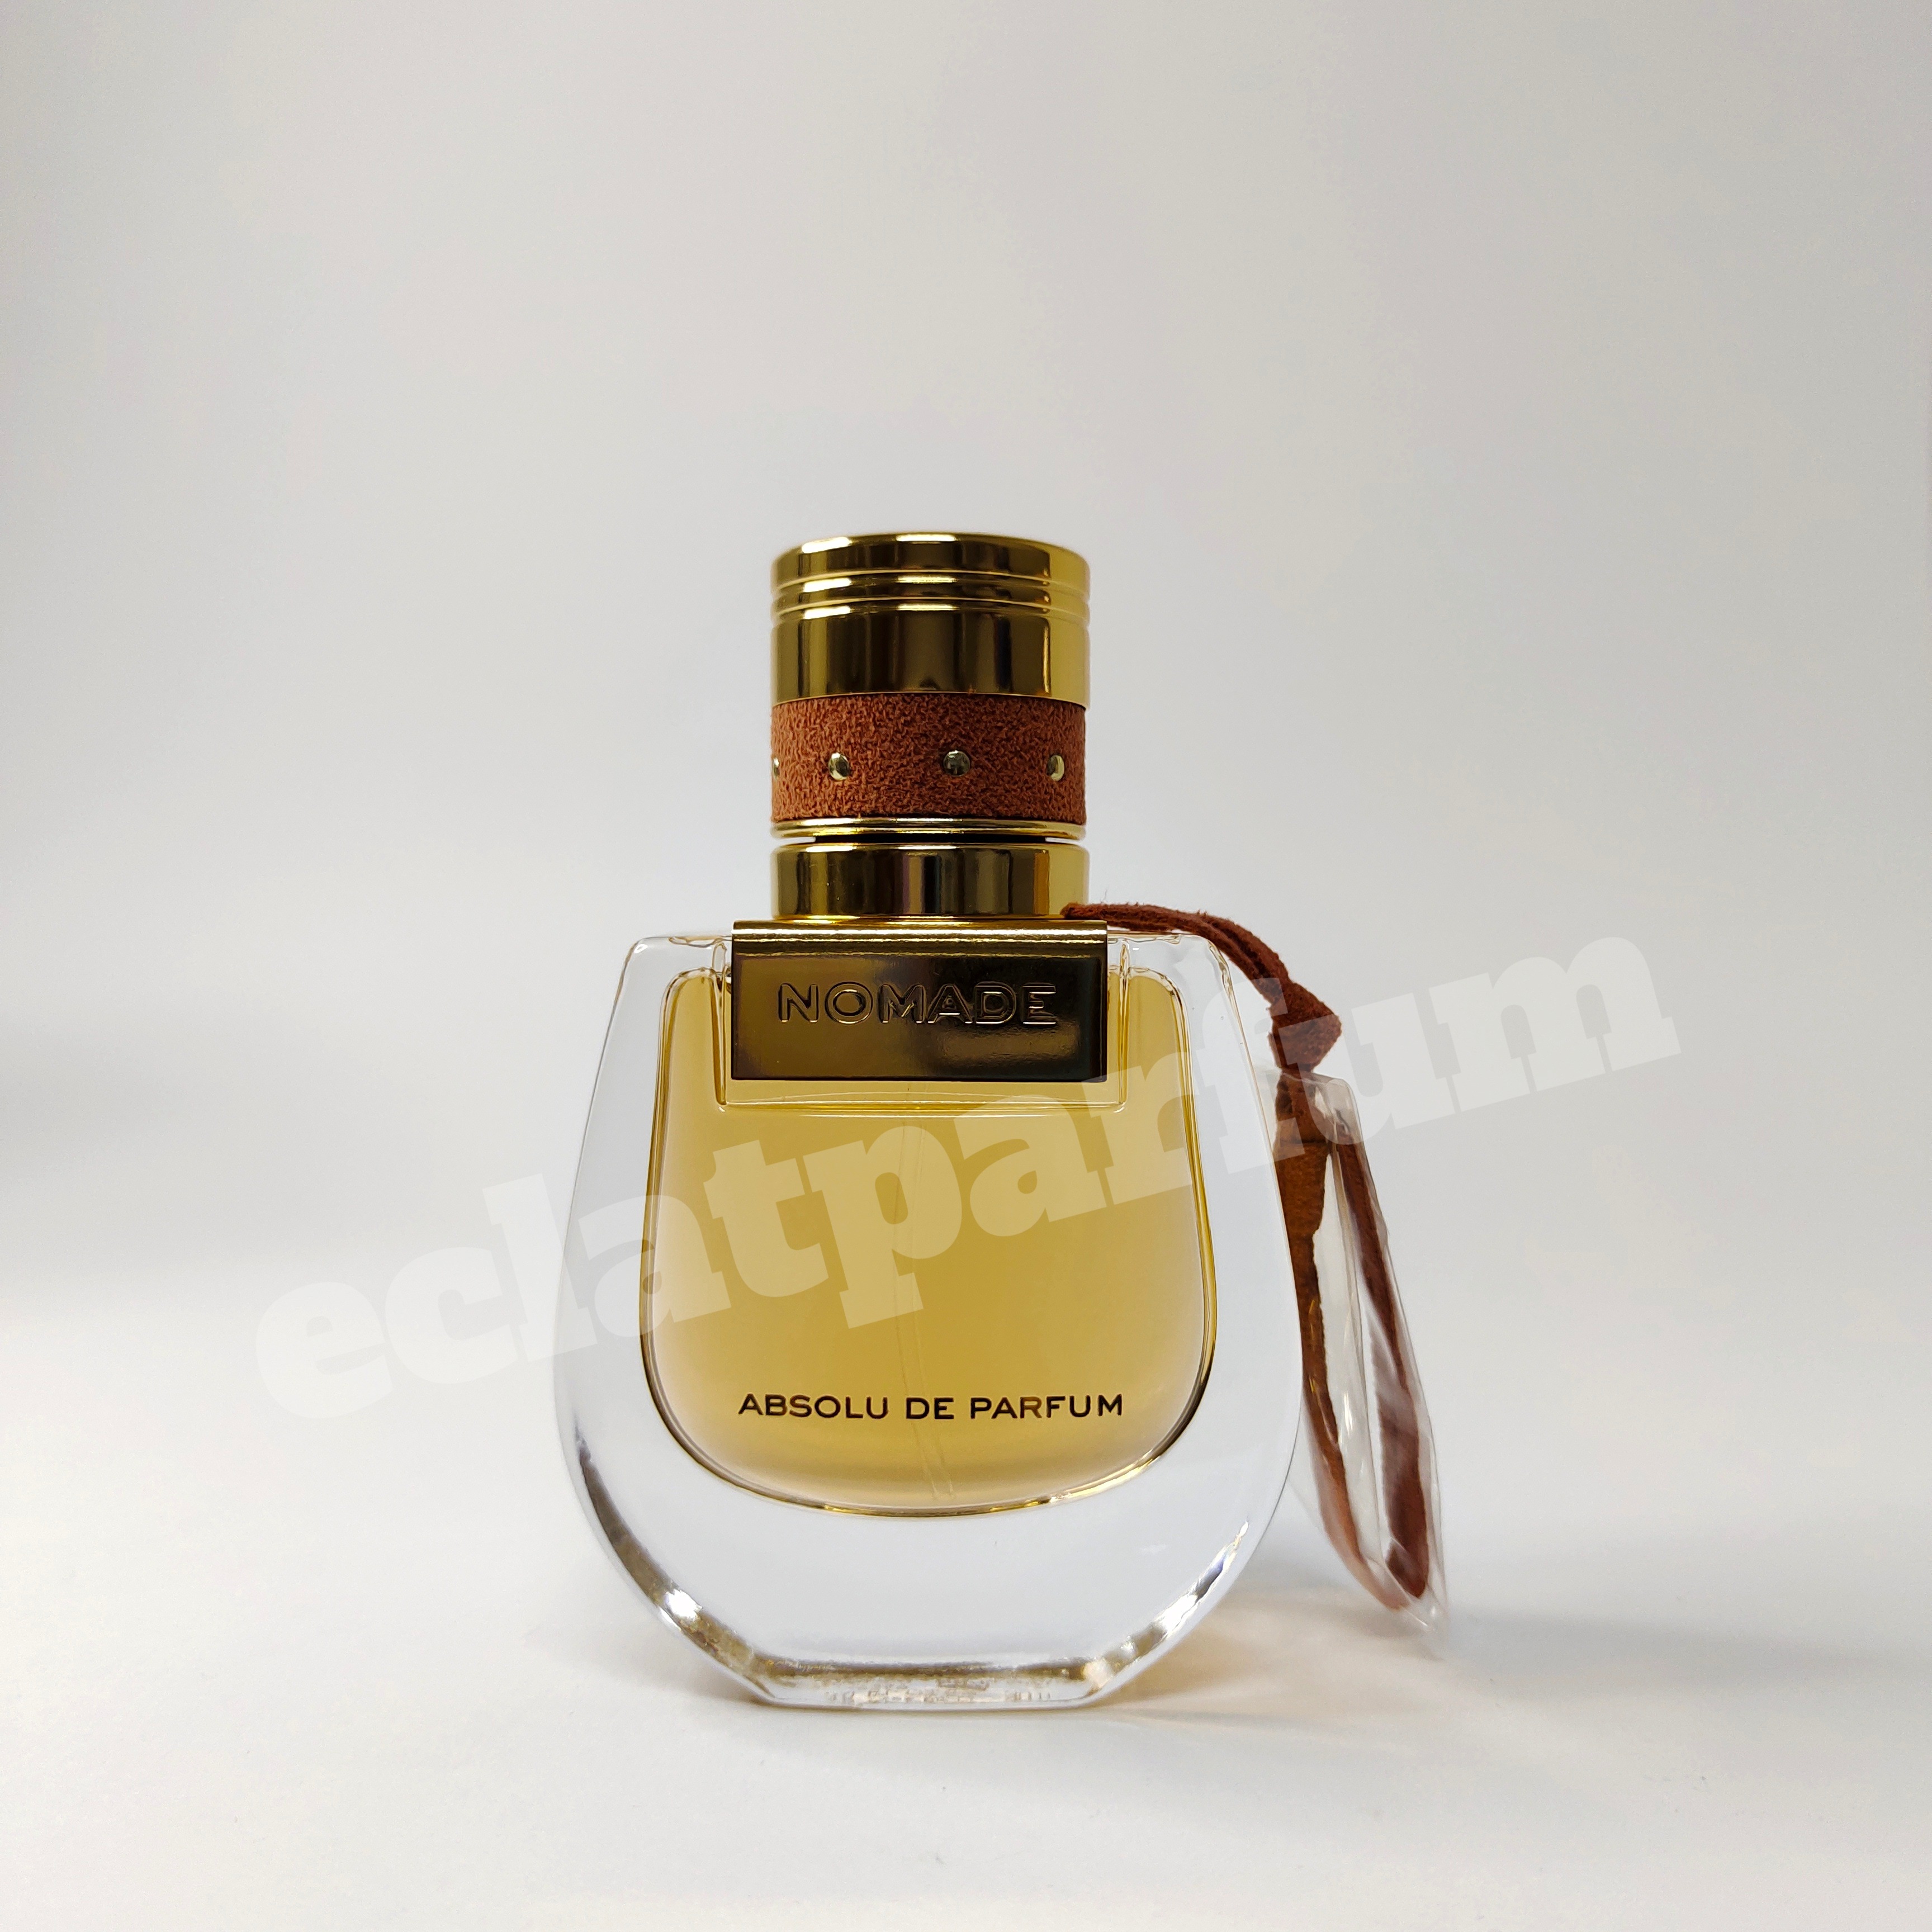 Lazada - Win a Chloé Nomade Naturelle Eau de Parfum 75ml